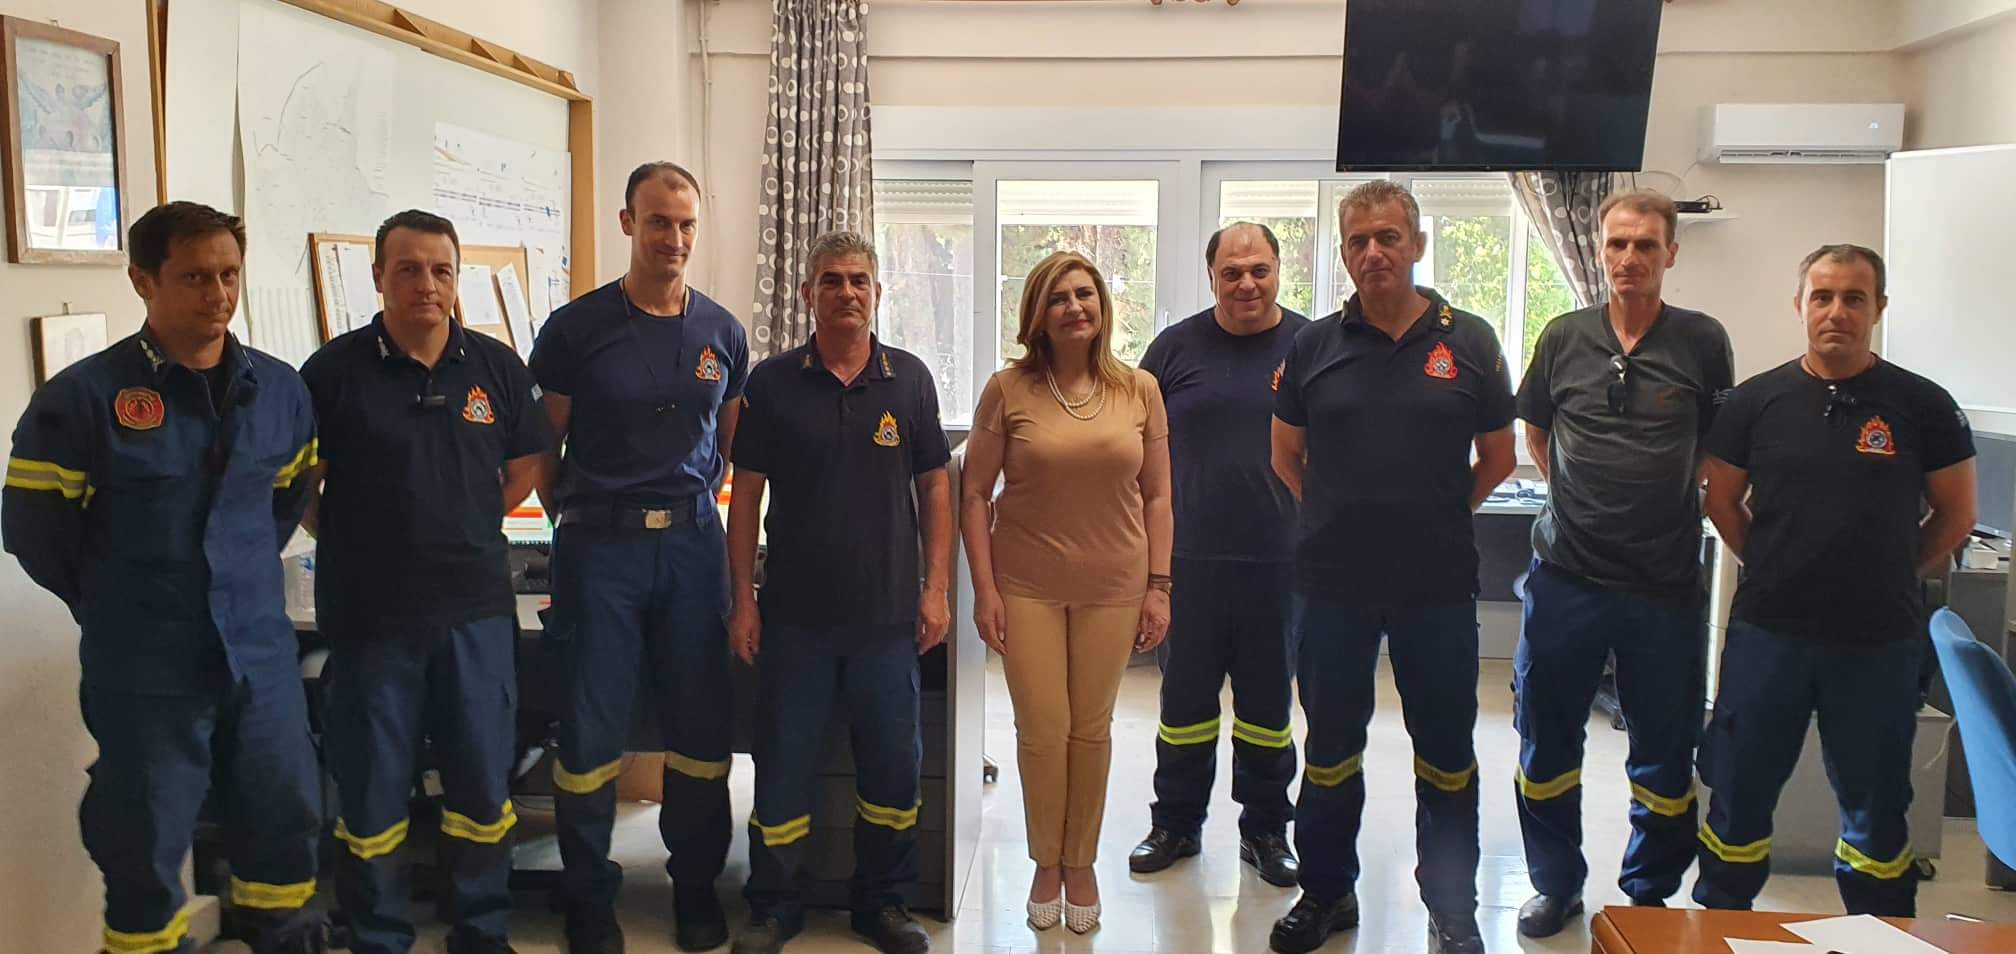 Ε. Λιακούλη: "Η Πυροσβεστική Υπηρεσία της Λάρισας, στο επίκεντρο της φροντίδας μας"